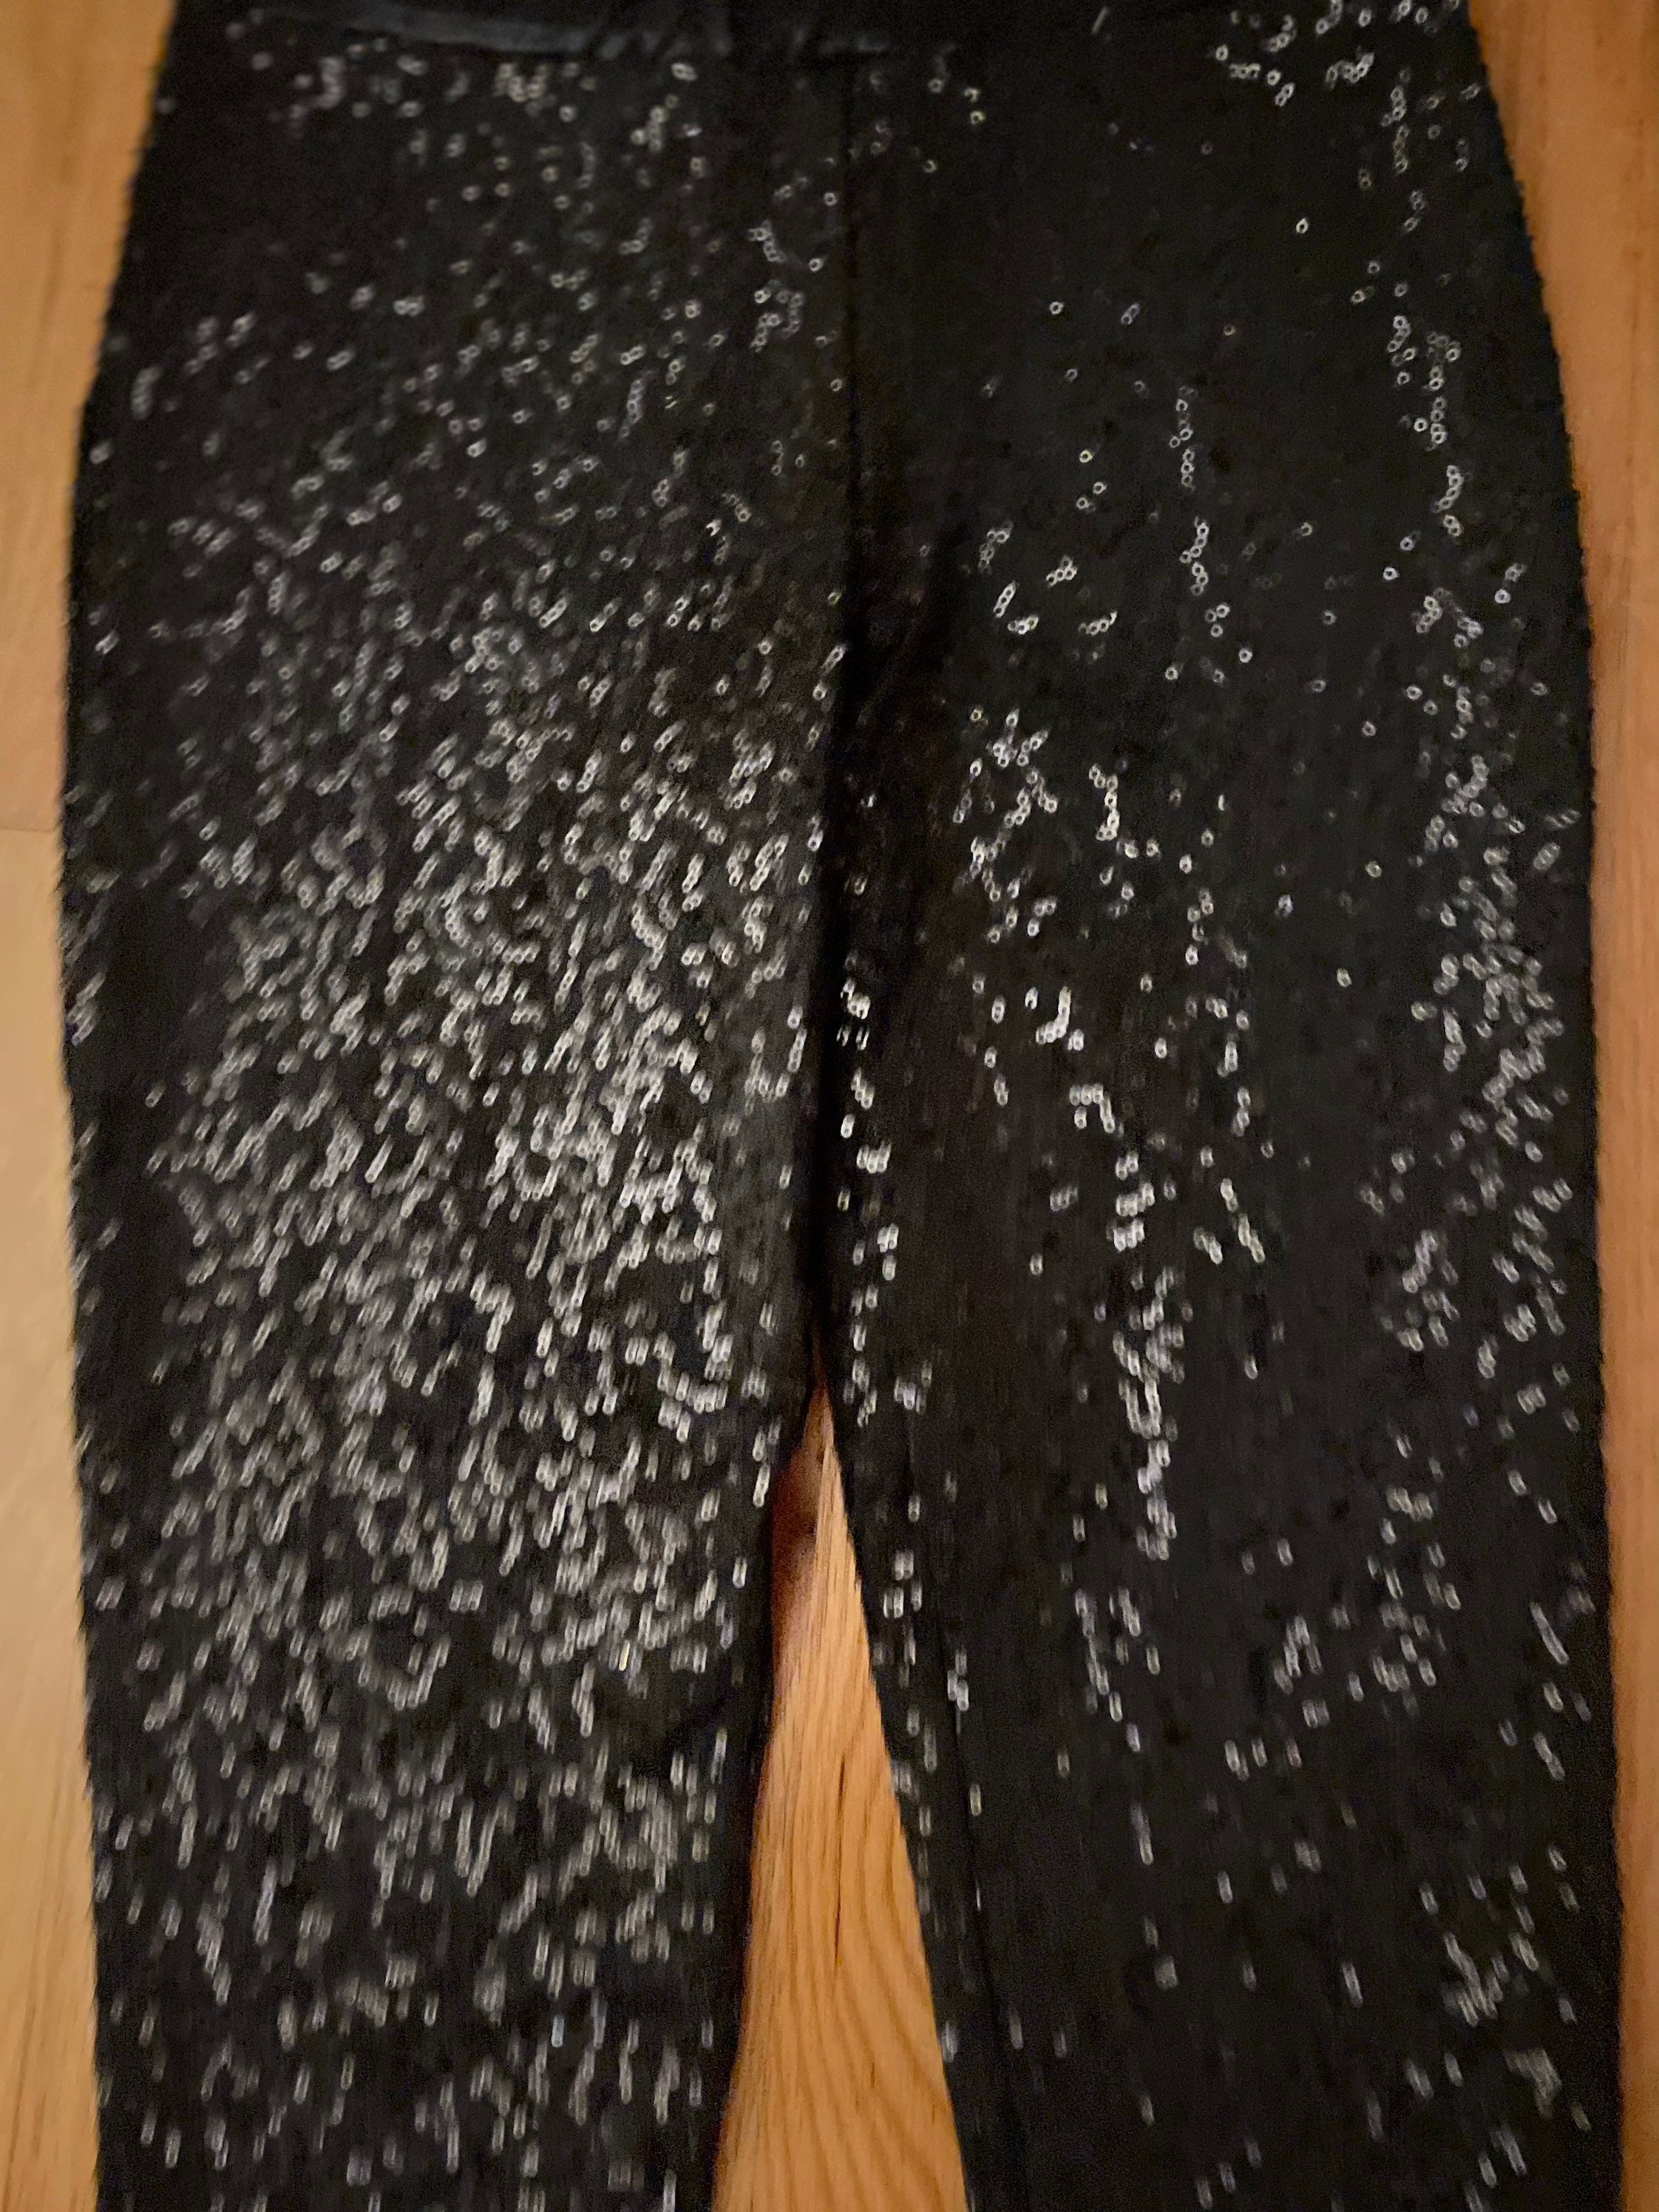 Black Sequin Pants / High Size Cigarette Cut / Size XXS-XS 